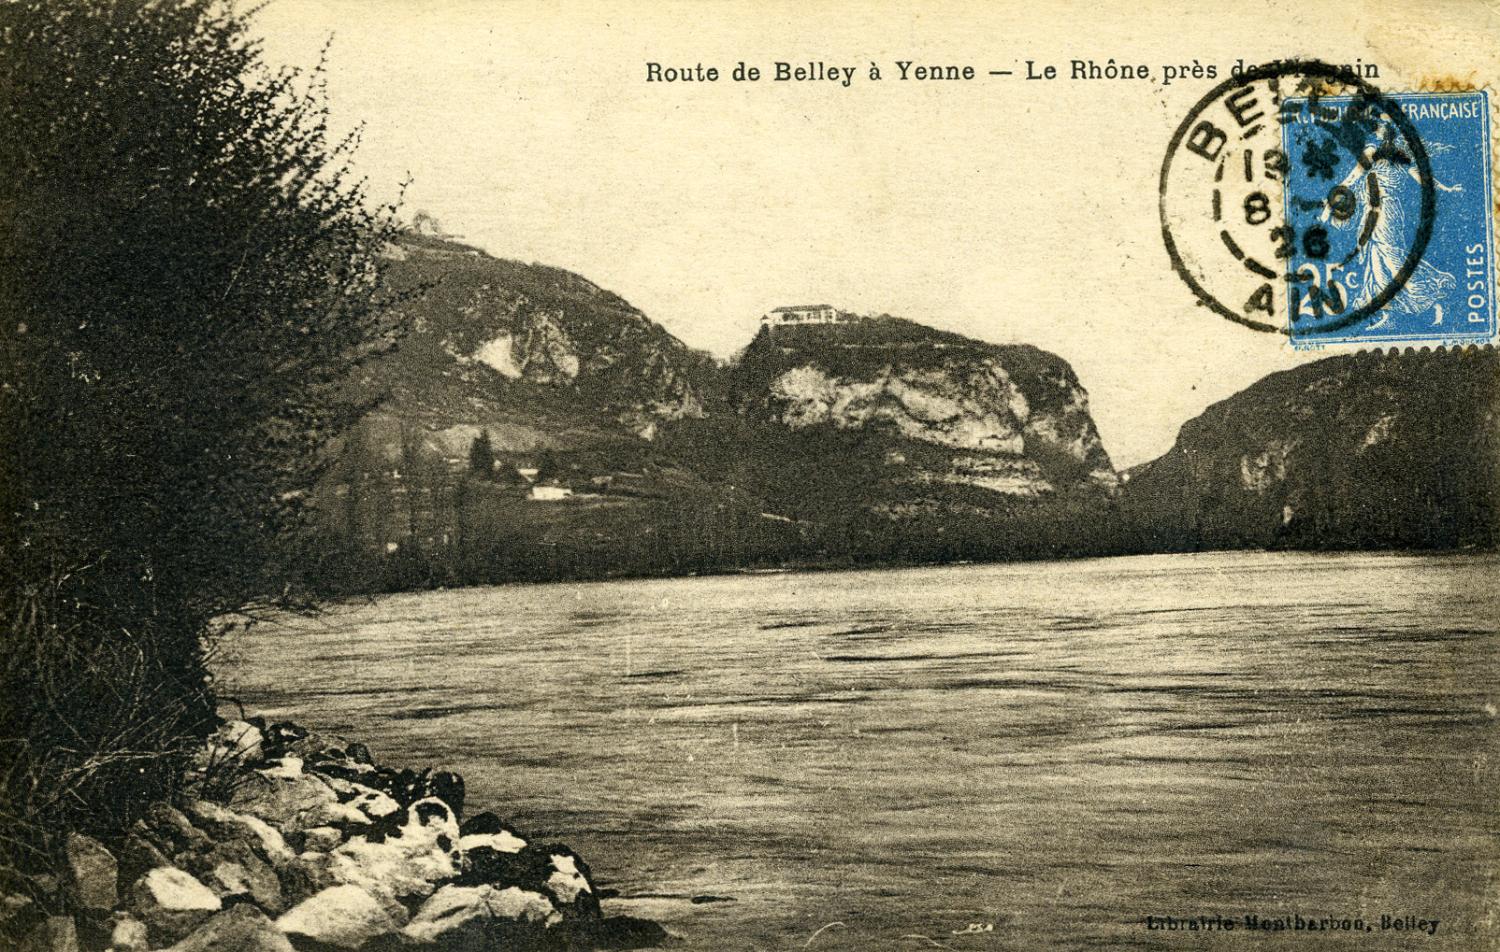 Route de Belley à Yenne - Le Rhône près de Virignin